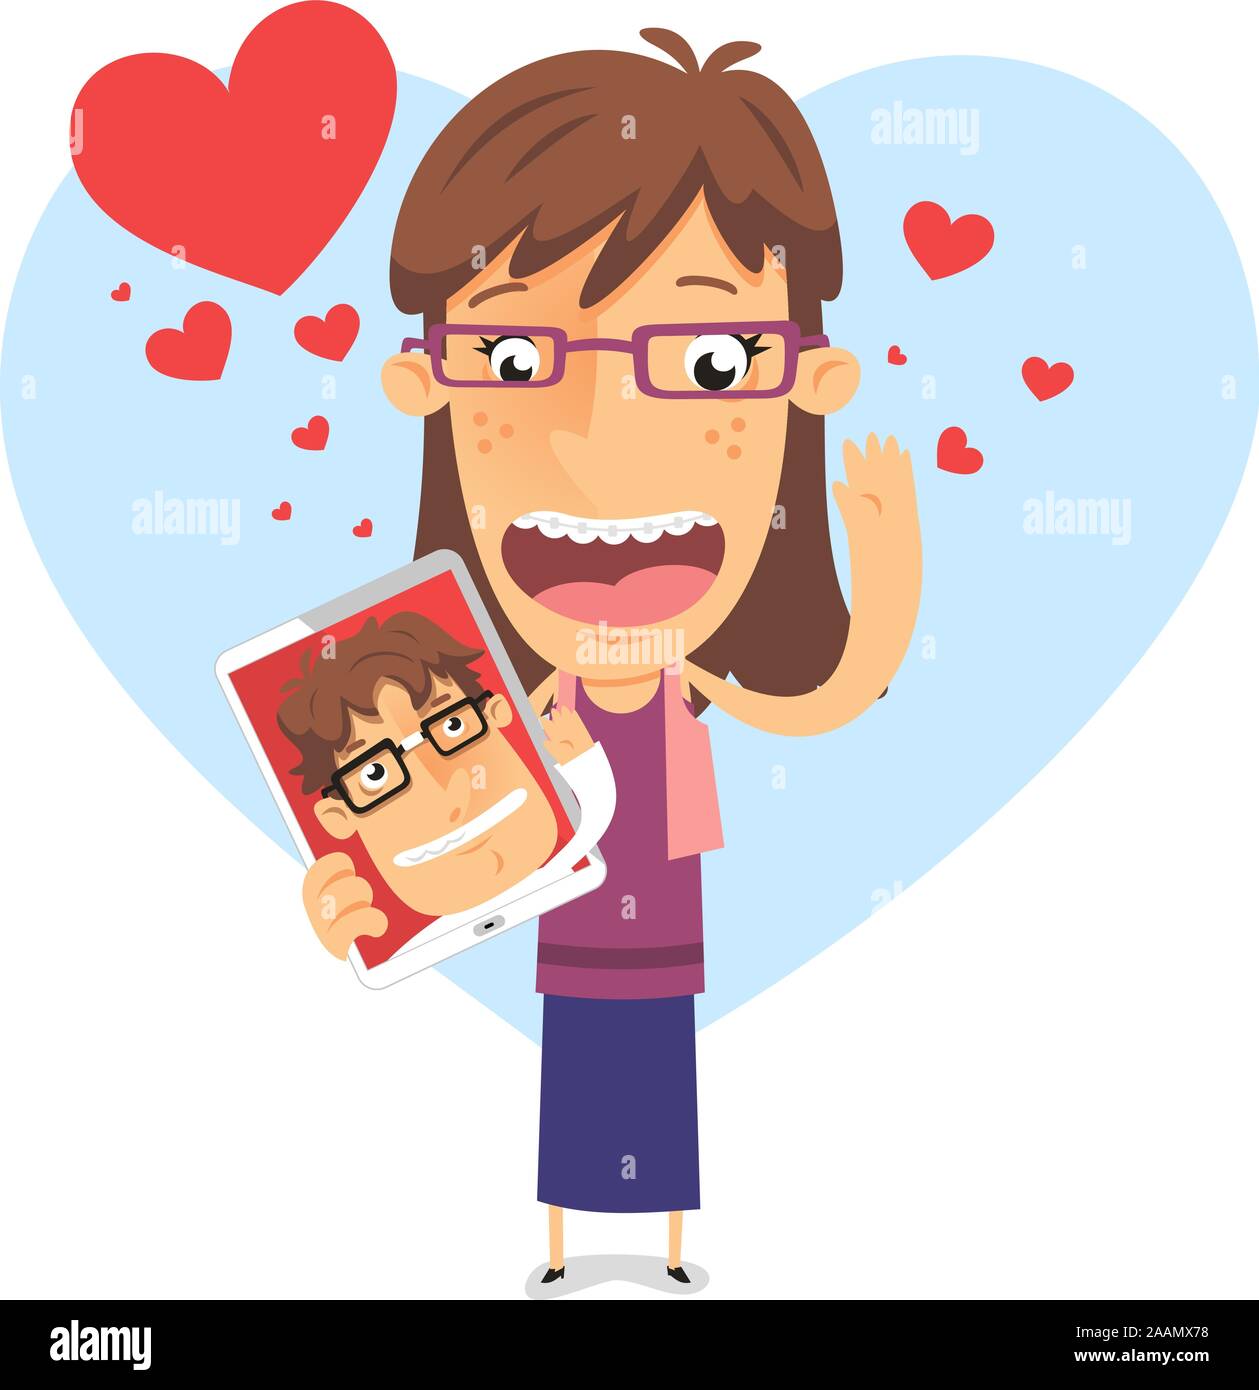 In amore geek girl in possesso di un Ipad con nerd ragazzo illustrazione vettoriale, con forma di cuore backround e molti cuori di diverse dimensioni in rosso e bl Illustrazione Vettoriale